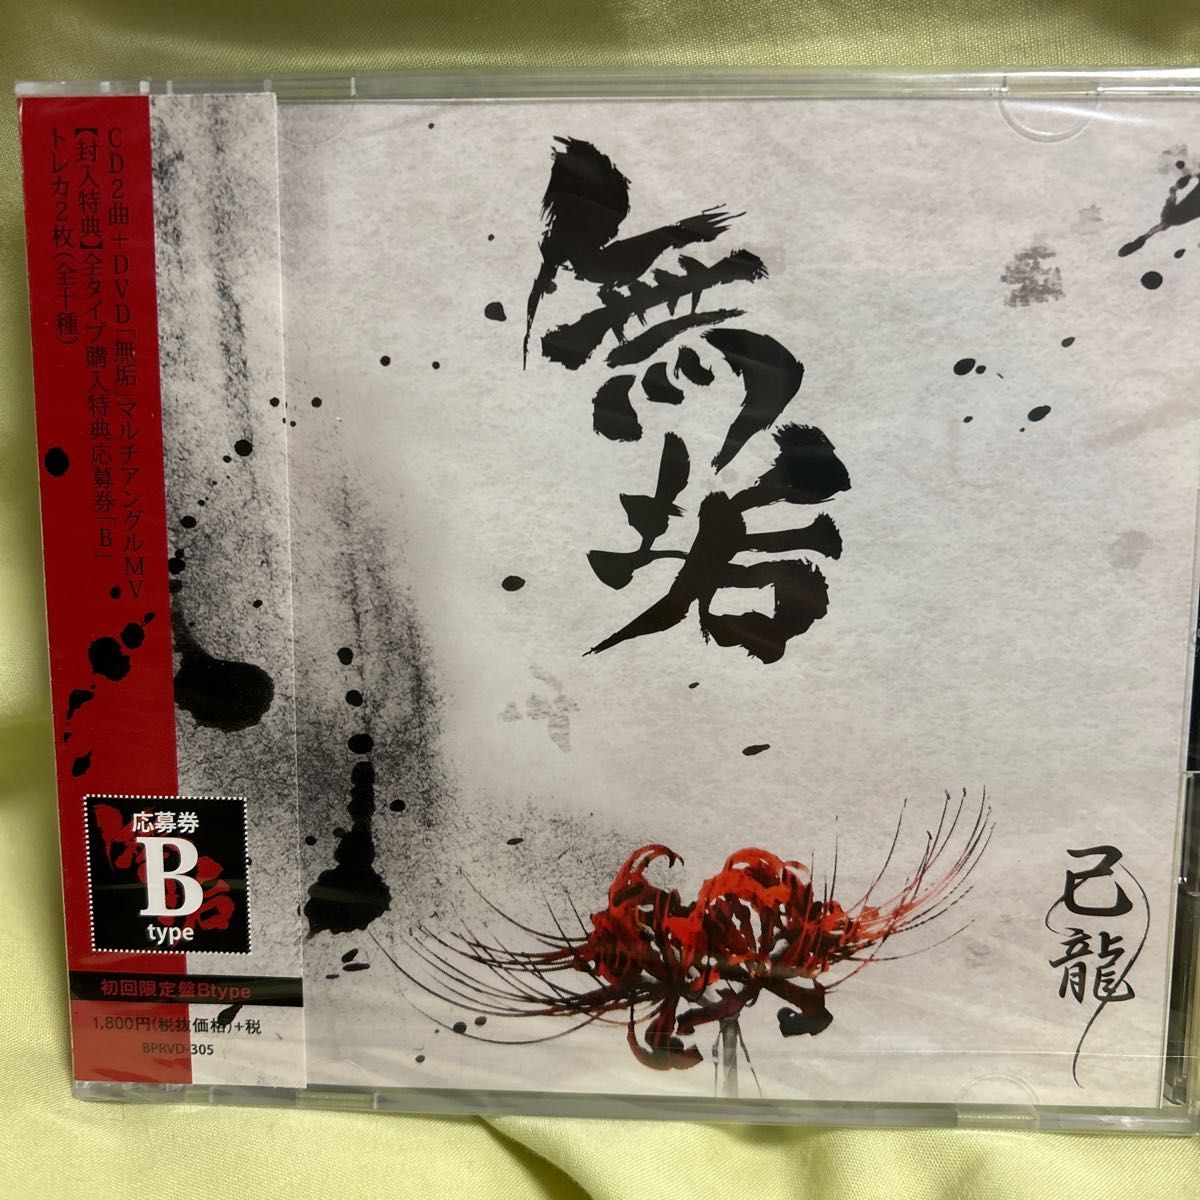 無垢 (初回限定盤:B) (DVD付) CD 己龍